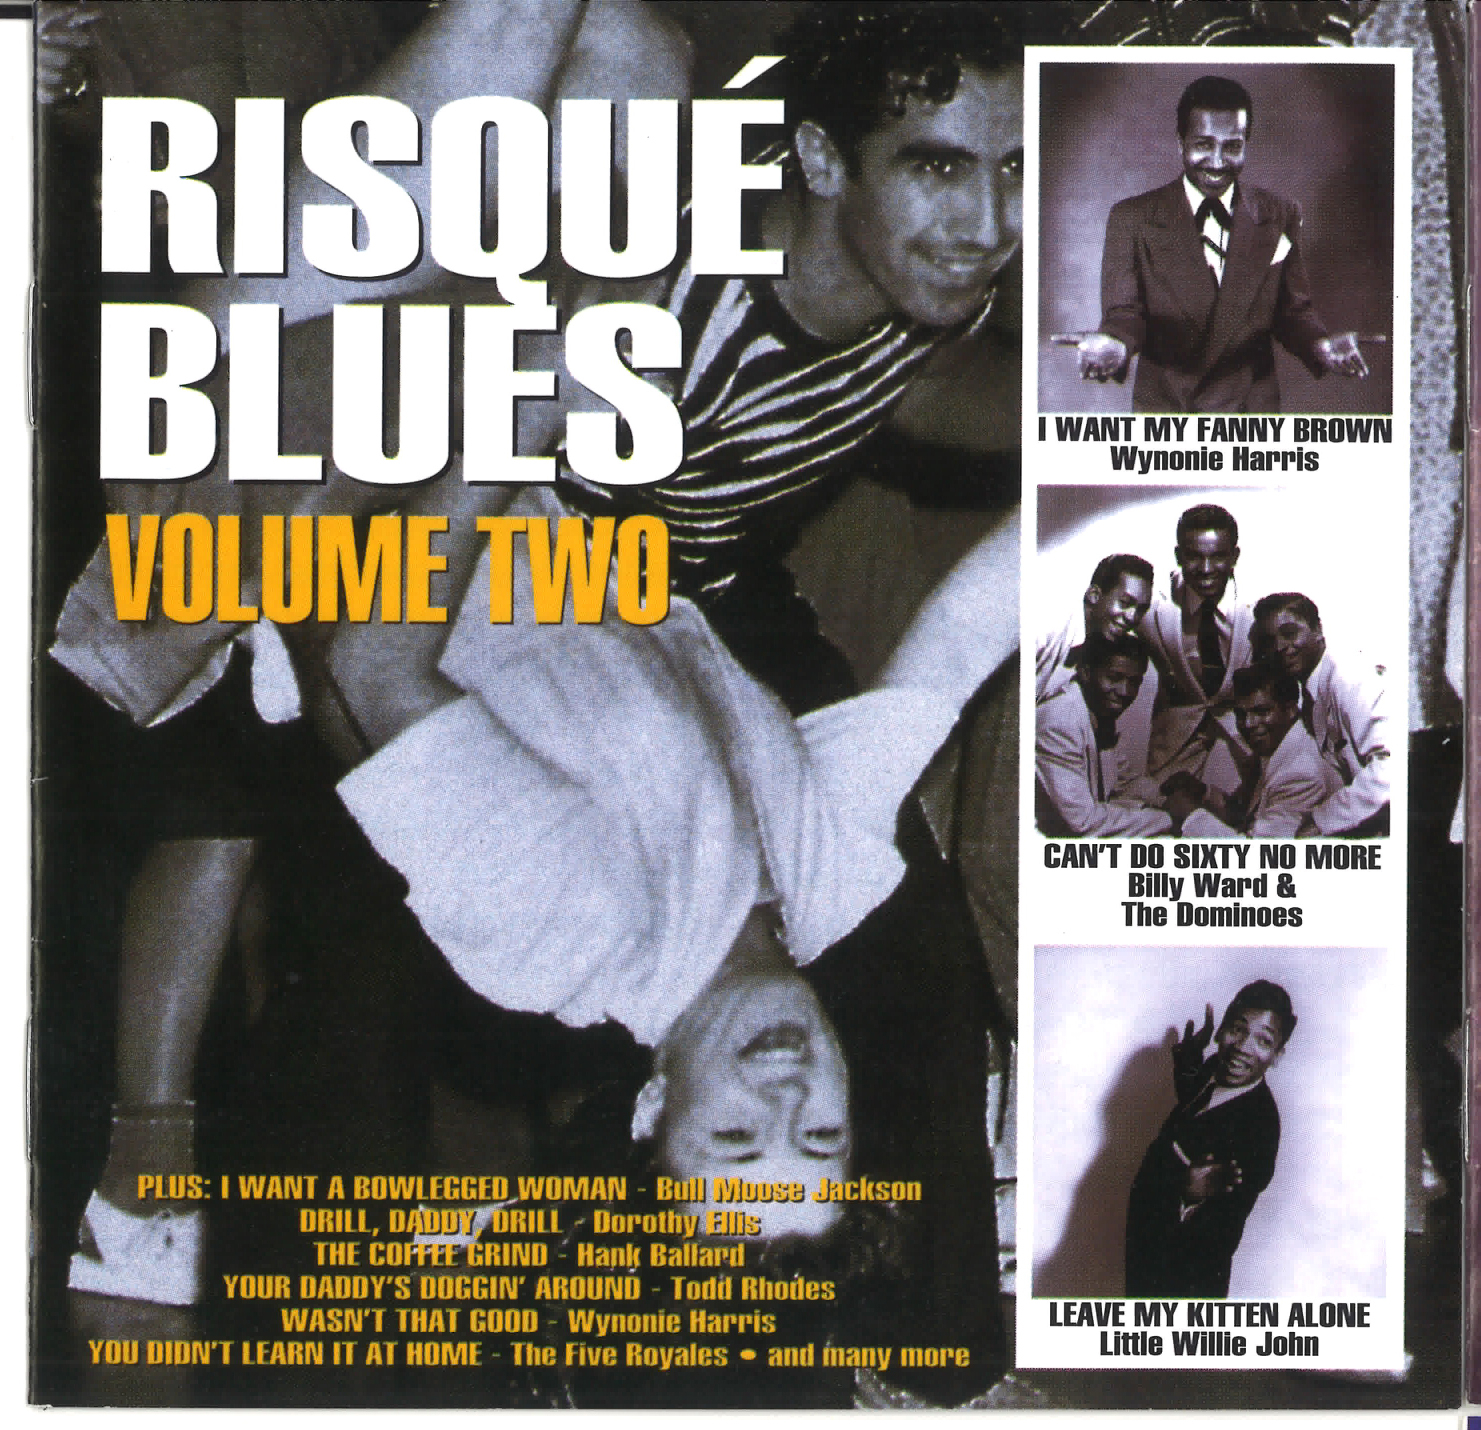 Risque Blues Vol. 2